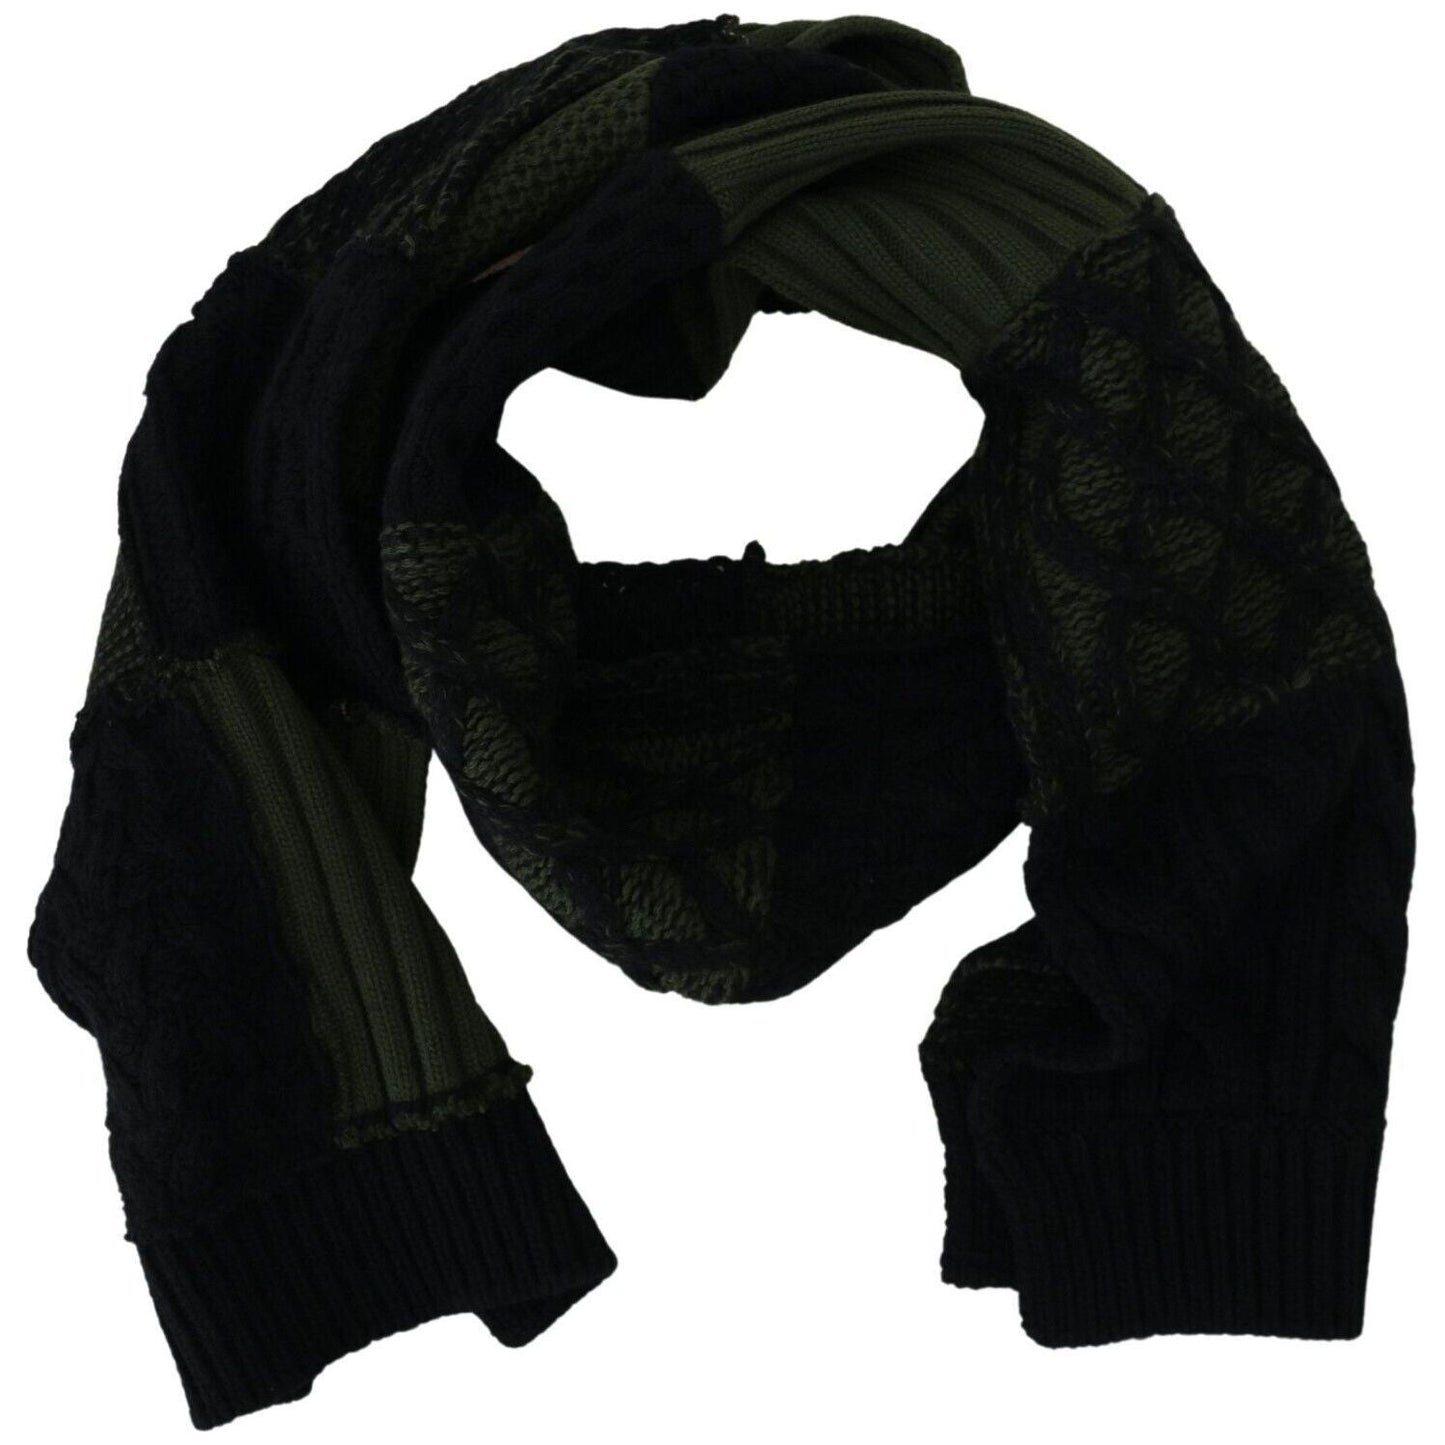 Elegant Wool Scarf in Black & Green